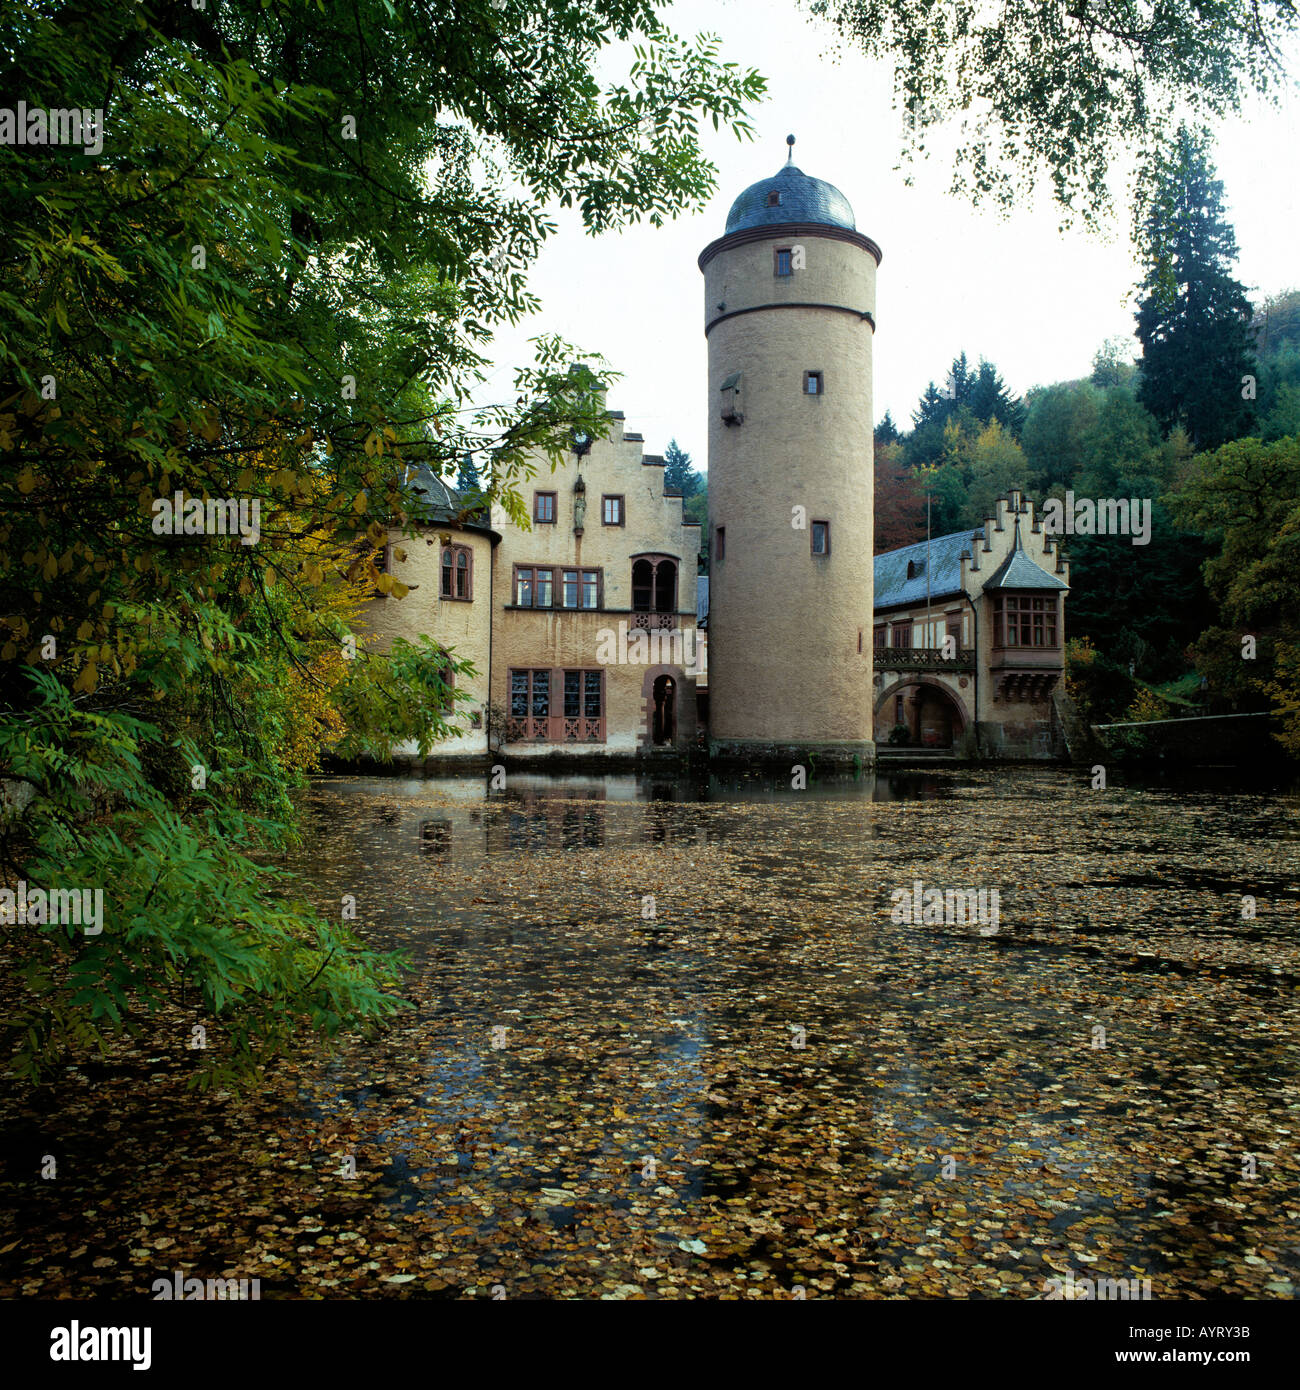 Wasserschloss Mespelbrunn, Herbstlaub auf dem Wasser, Mespelbrunn, Naturpark Bayerischer Spessart, Unterfranken, Bayern Stock Photo